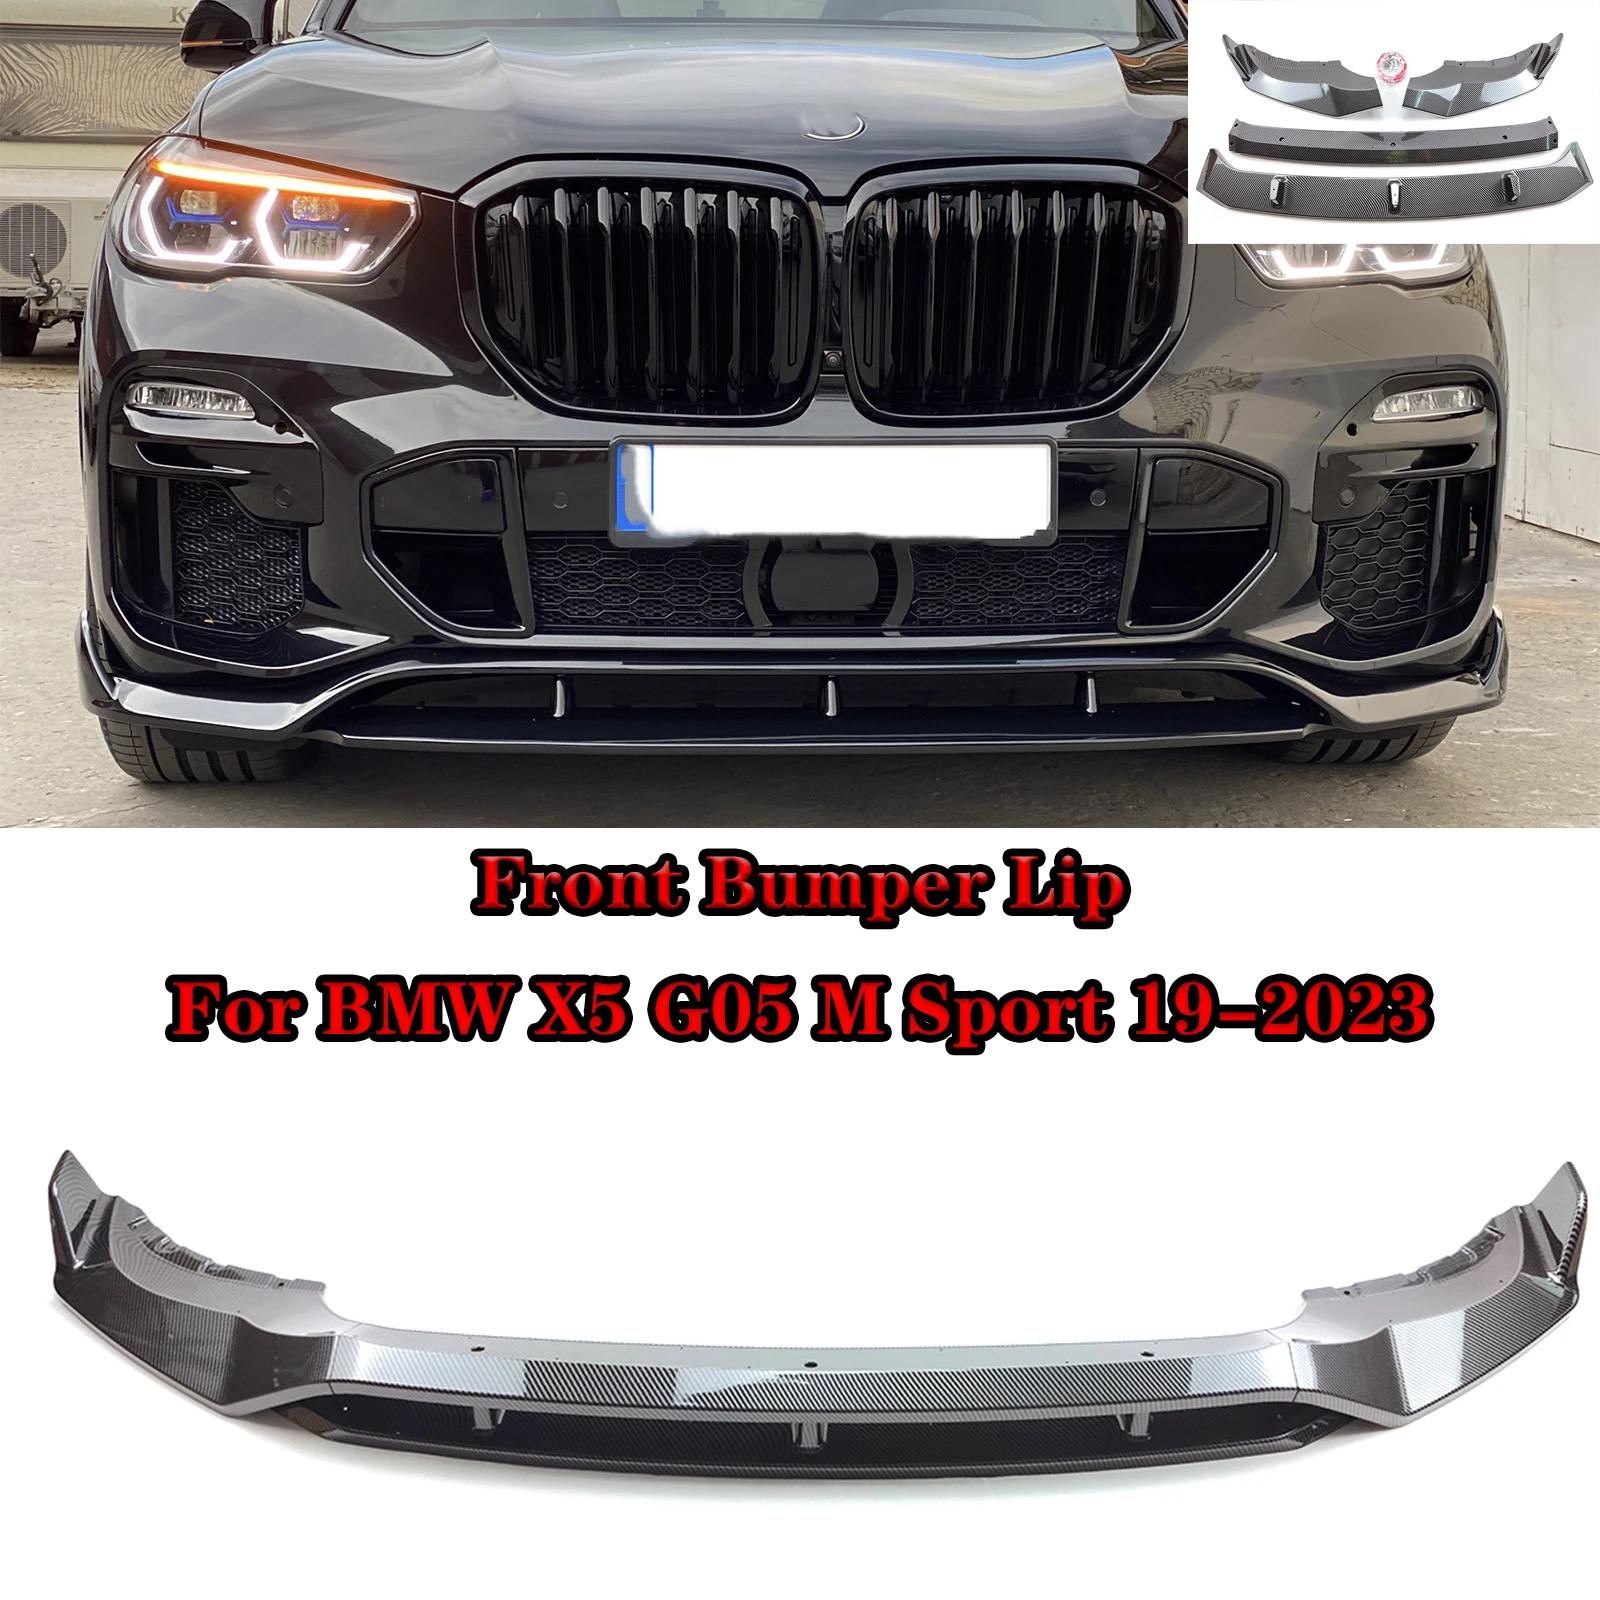 

Сплиттер губ переднего бампера автомобиля для BMW X5 G05 M Sport 2019-2023 Комплект нижнего корпуса автомобильные аксессуары глянцевый черный углеродное волокно вид